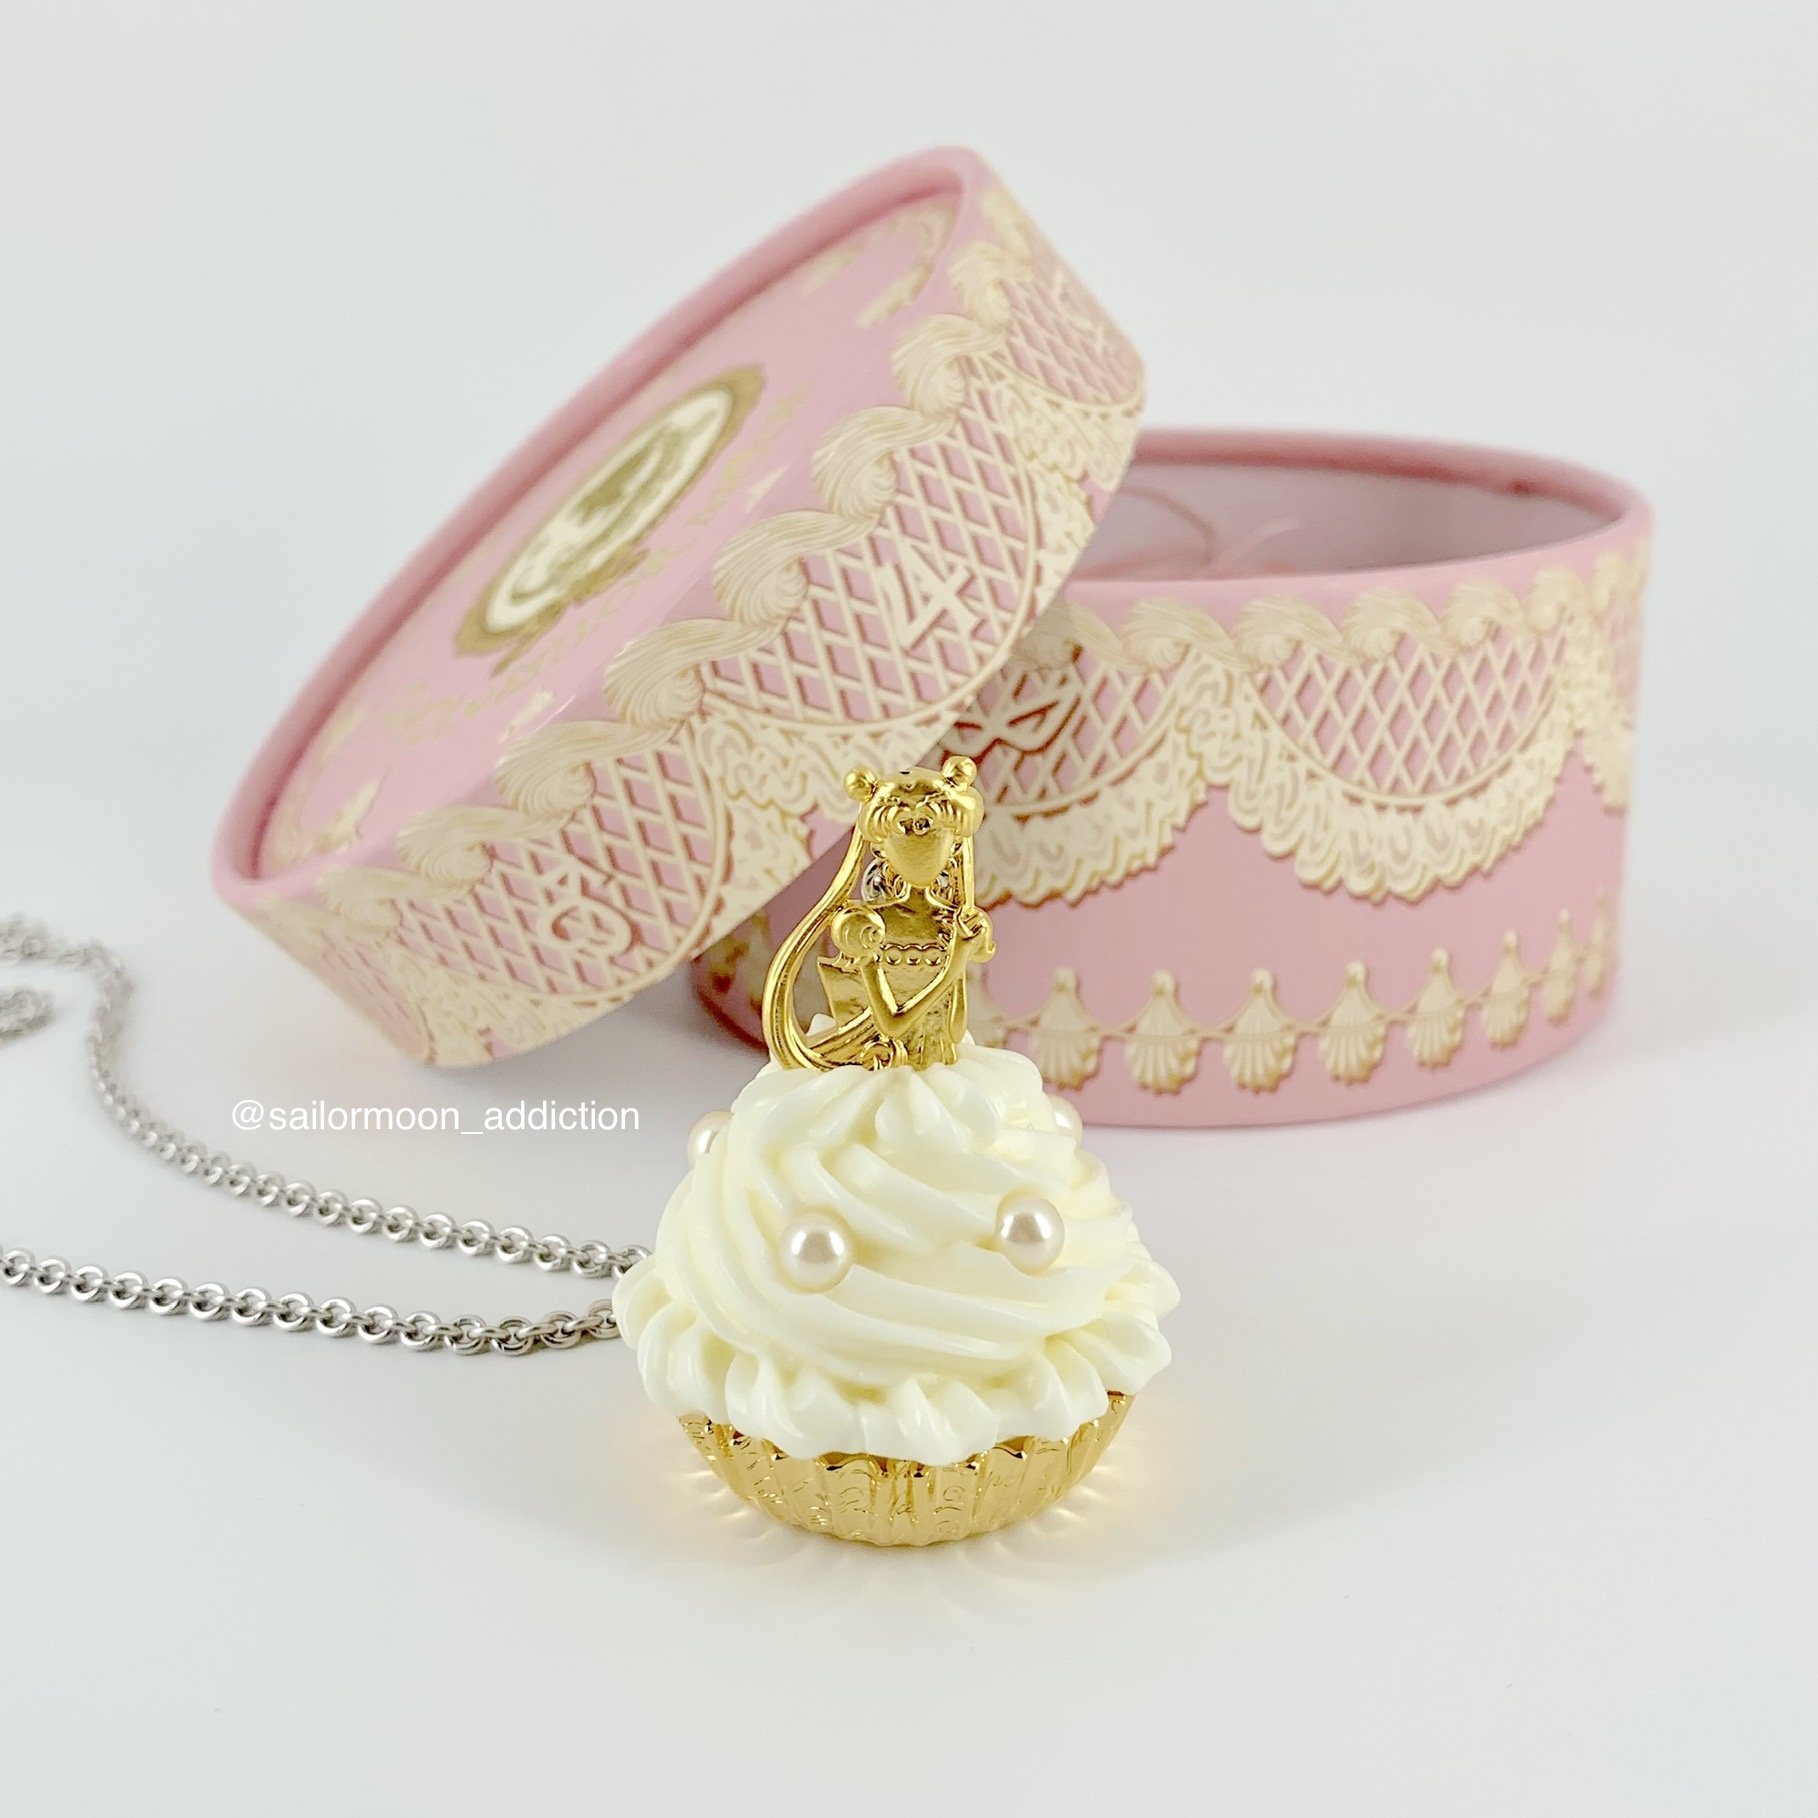 Review - Sailor Moon x Q-Pot 2019 Princess Serenity Cupcake Necklace